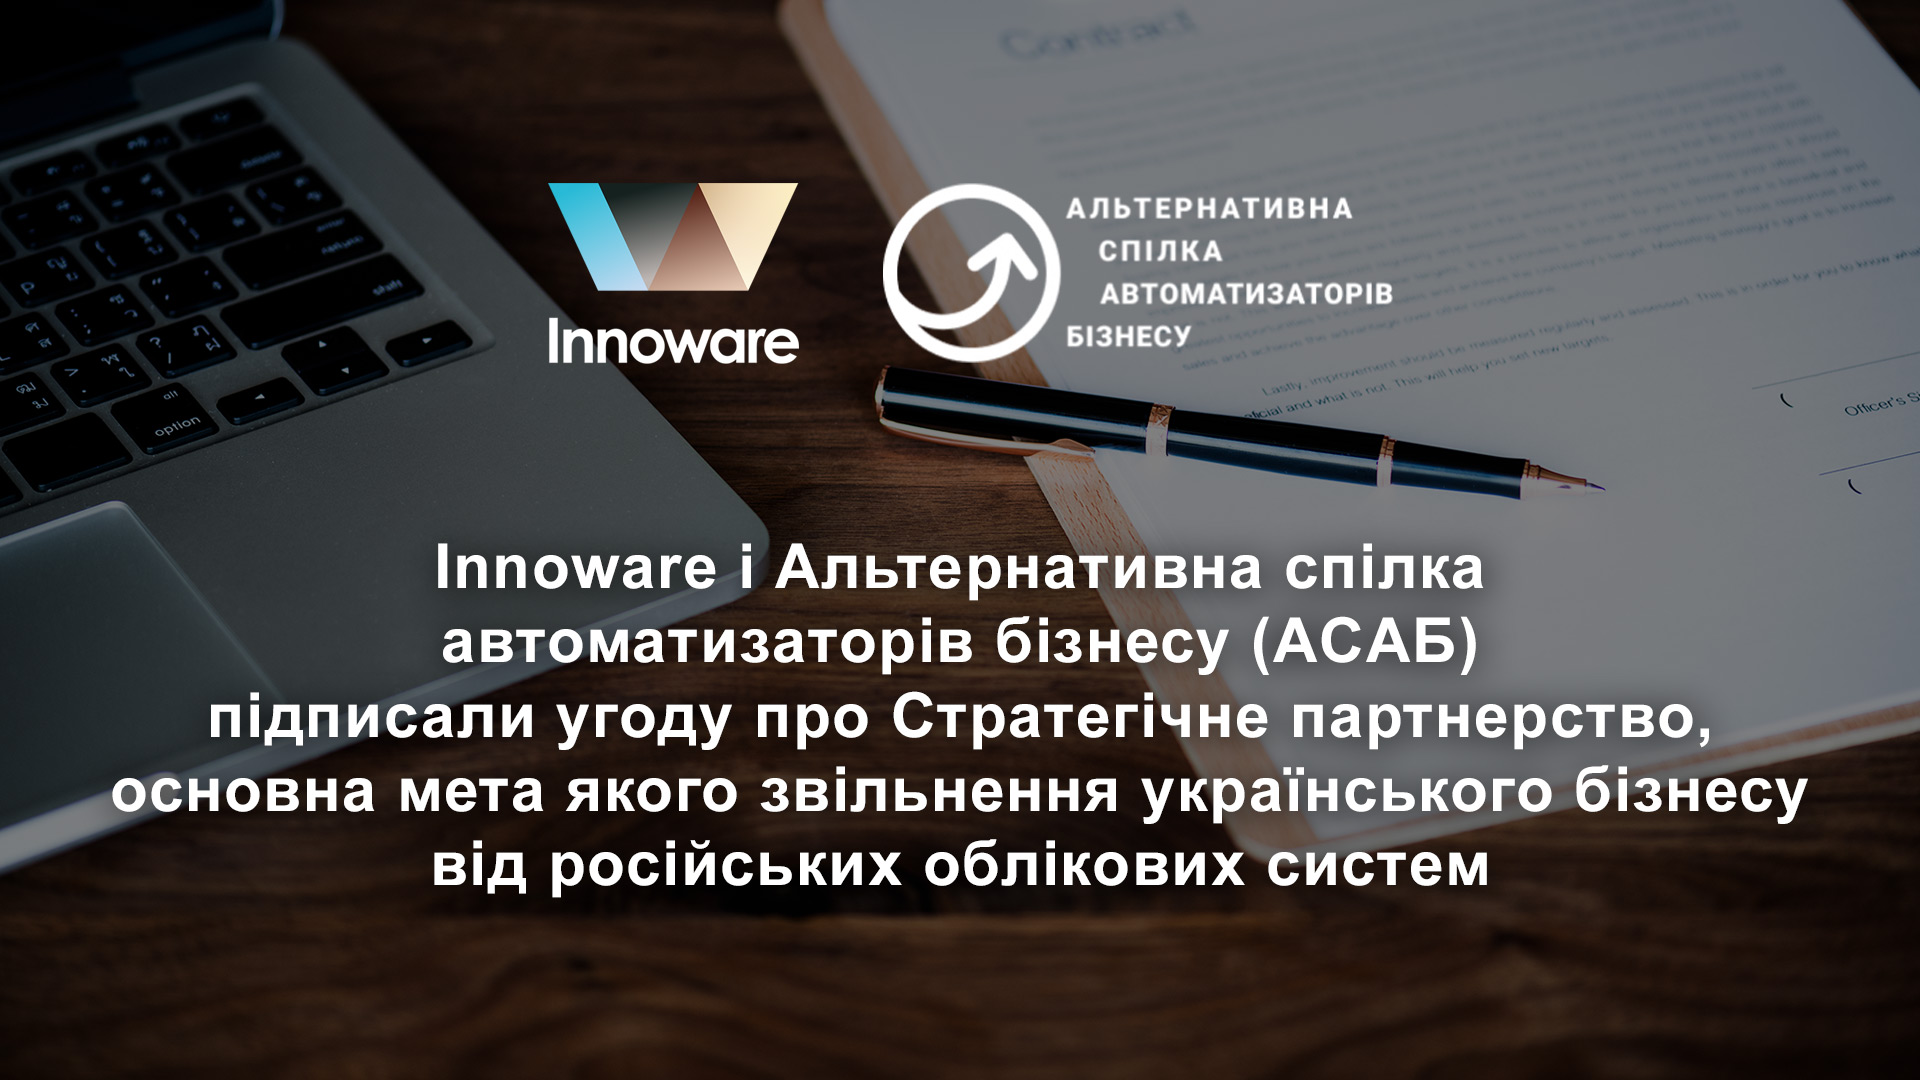 Innoware і Альтернативна спілка автоматизаторів бізнесу (ACAБ) підписали угоду про Стратегічне партнерство, основна мета якого звільнення українського бізнесу від російських облікових систем